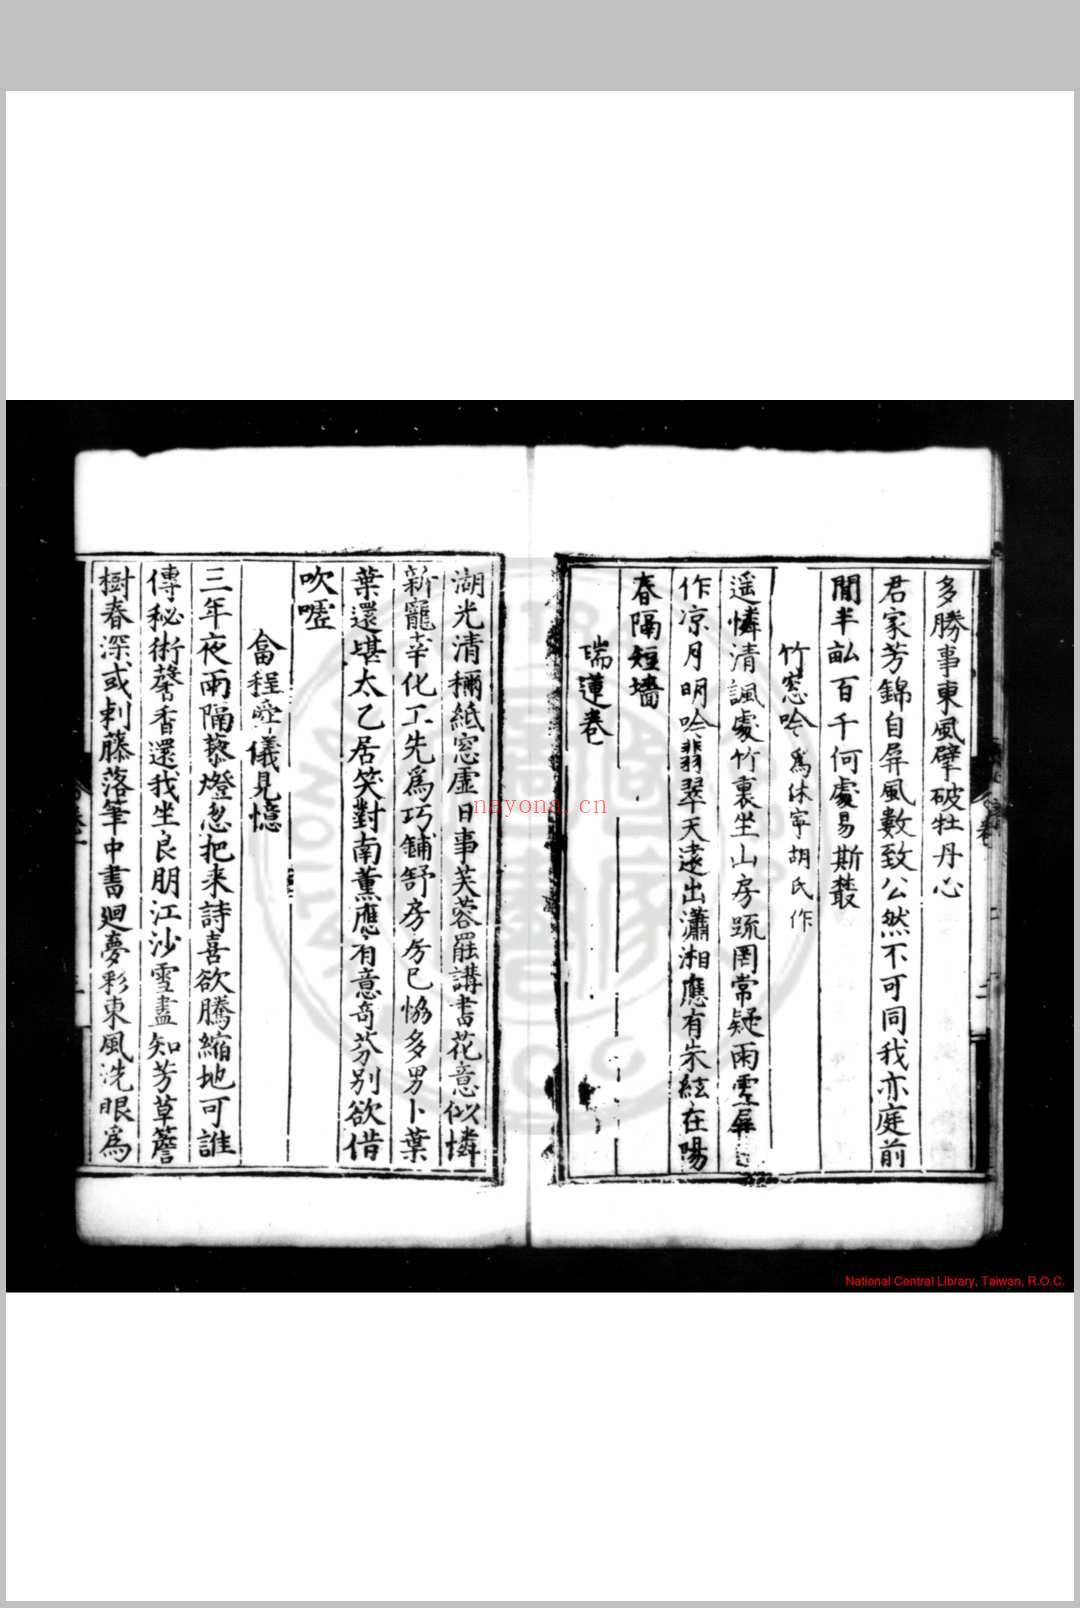 白房杂兴 (明)朱衮撰 明嘉靖间(1522-1566)永州刊本